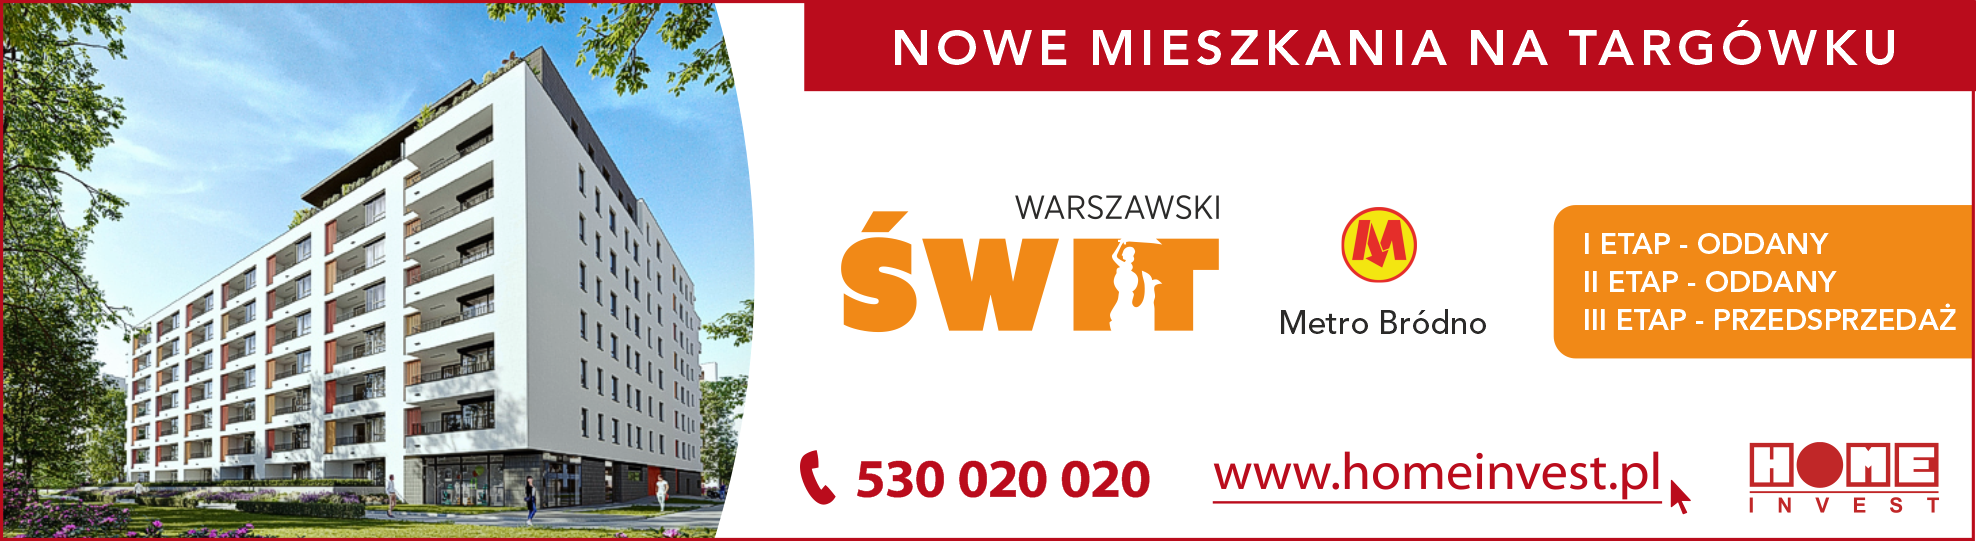 Nowe mieszkania na Targówku Warszawski Świt